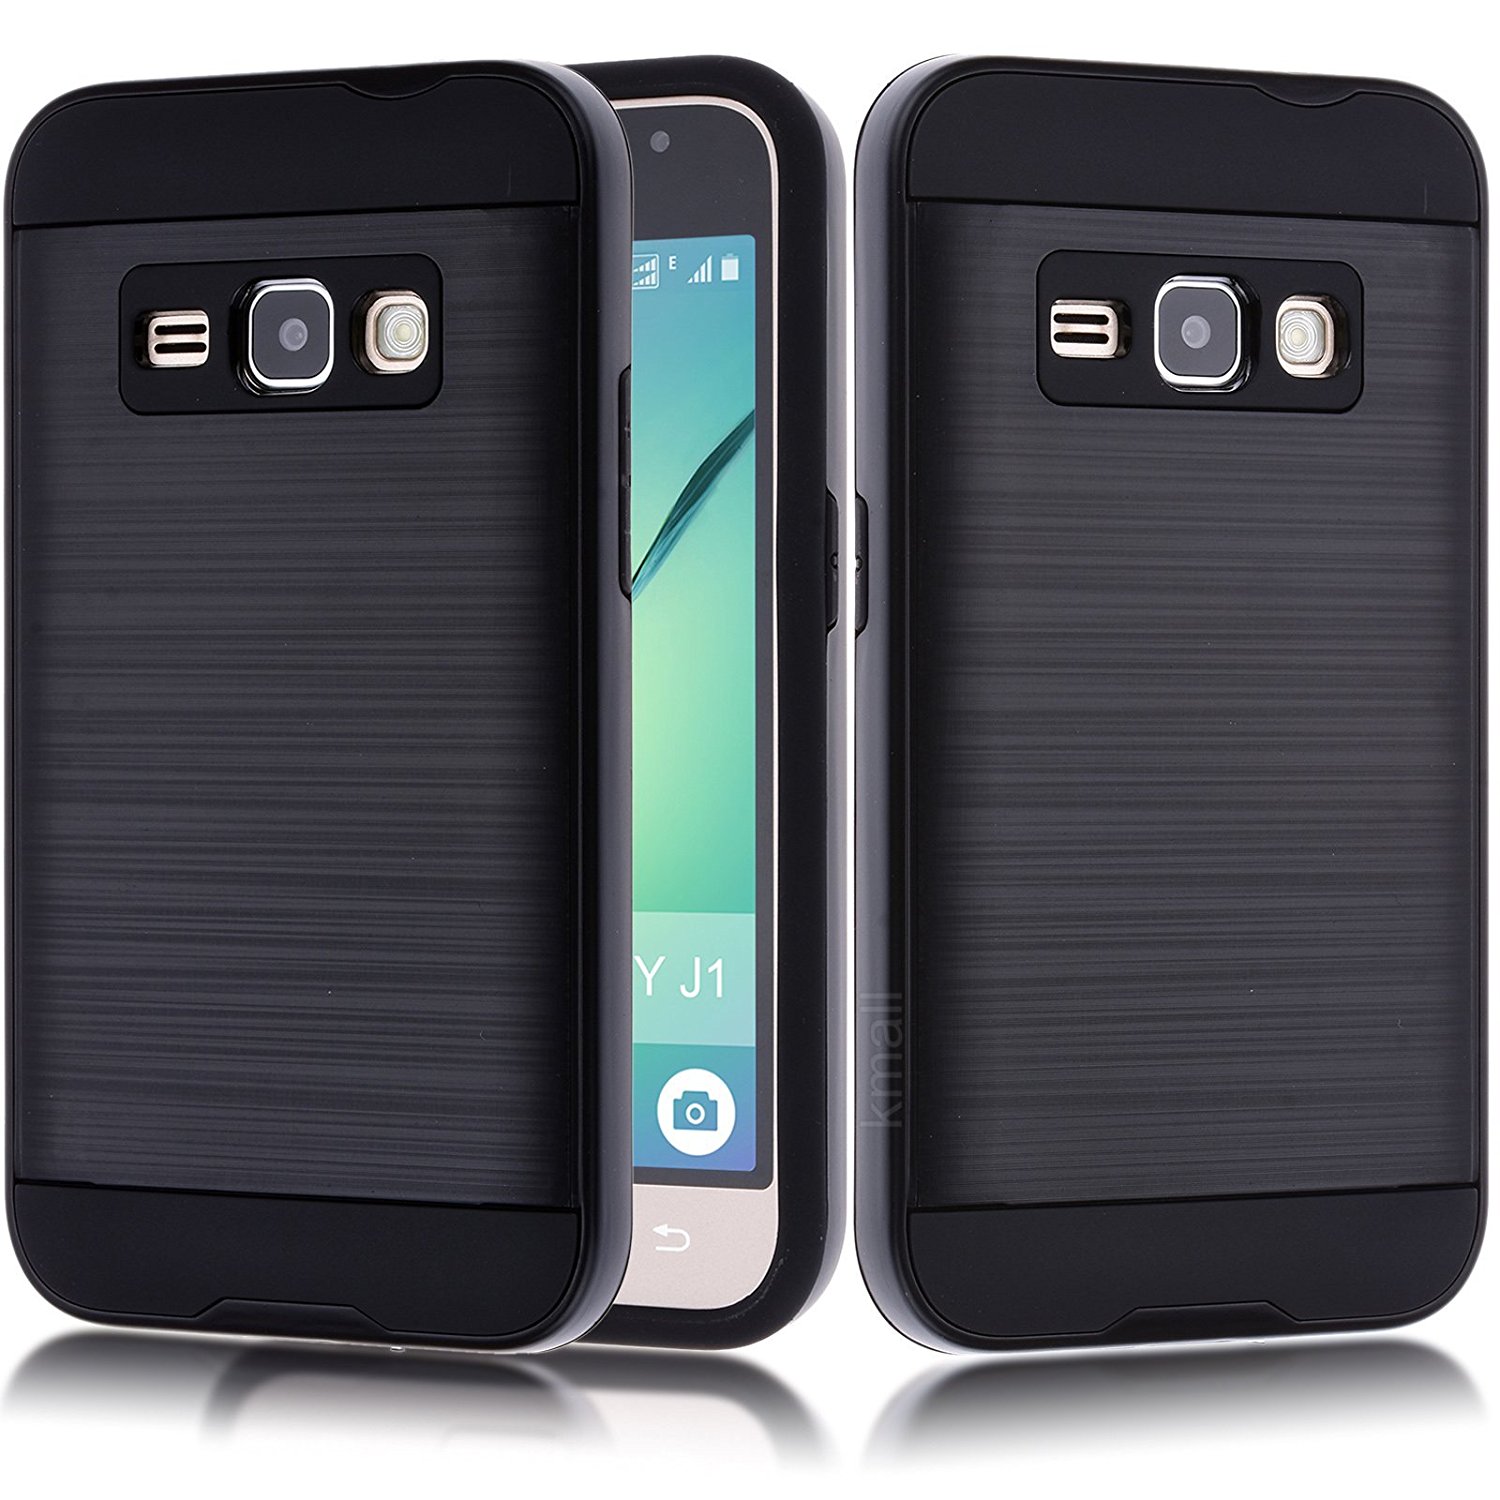 Samsung Galaxy J1 (2016) / Amp 2 / Express 3 / Galaxy Luna Armor Hybrid Case (Black)